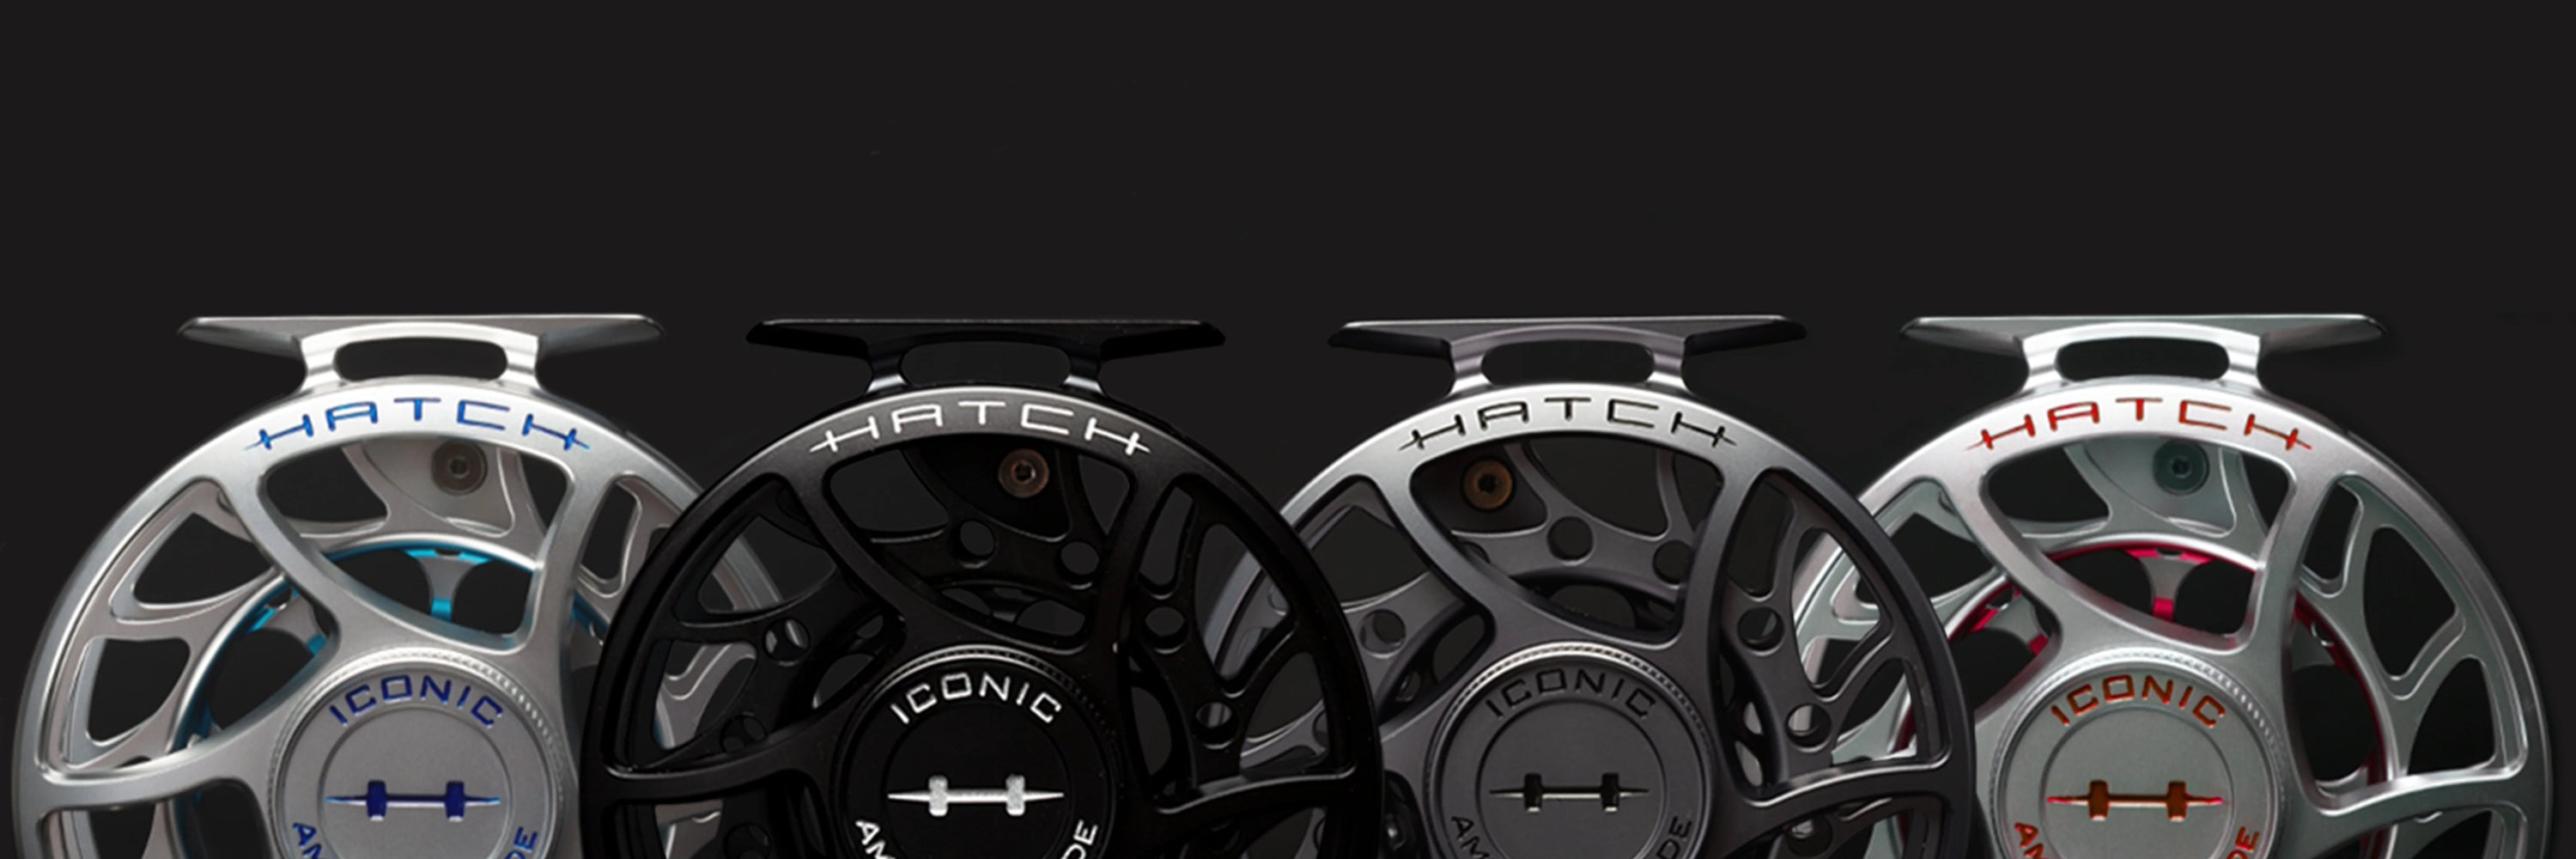 Hatch Iconic 4+ LA Reel – Bear's Den Fly Fishing Co.